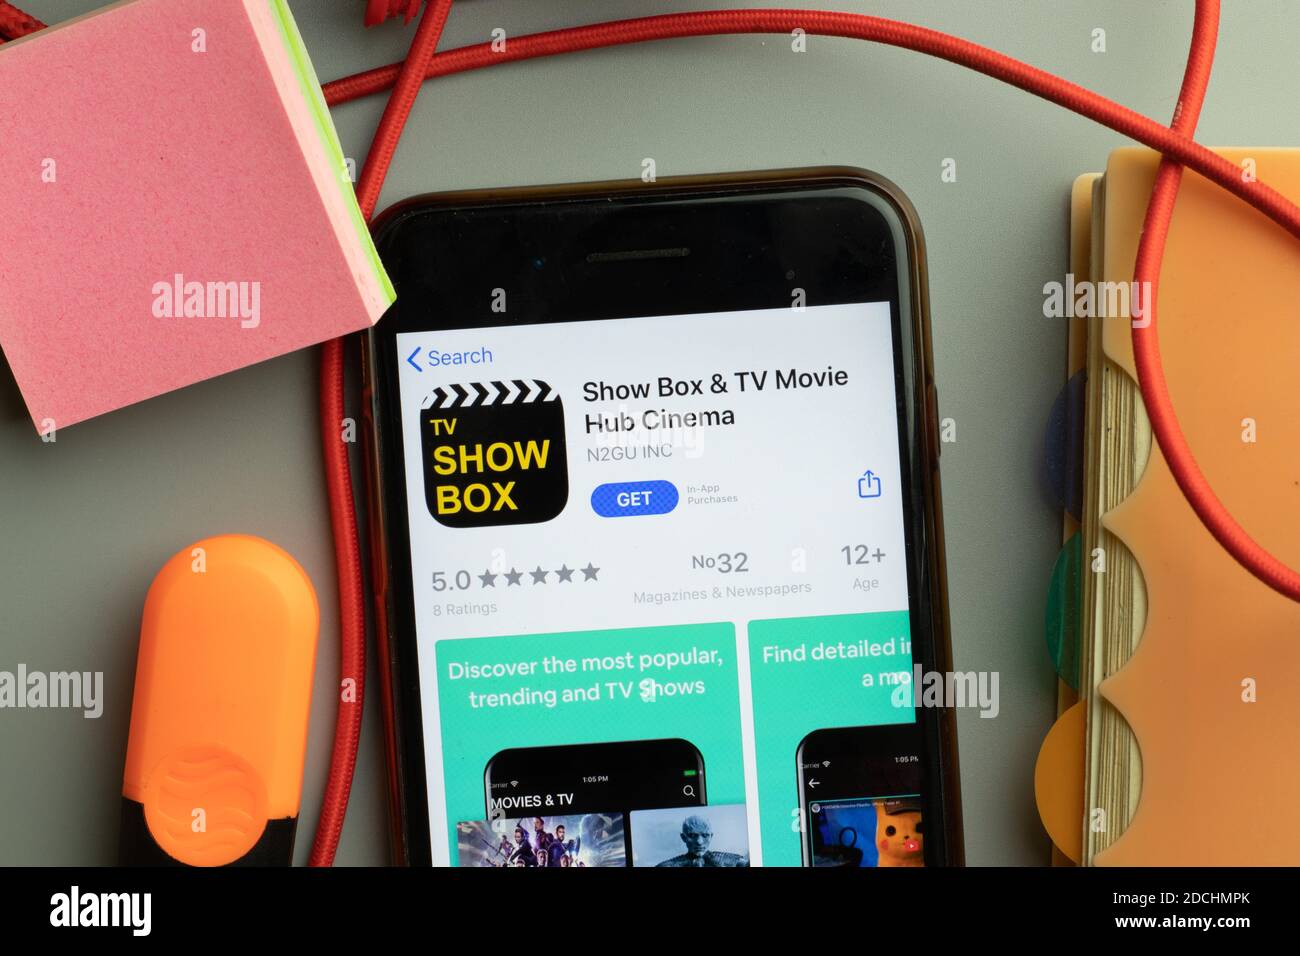 New York, Stati Uniti - 7 novembre 2020: Mostra il logo dell'app store di Box TV Movie Hub Cinema sullo schermo del telefono, editoriale illustrativo. Foto Stock